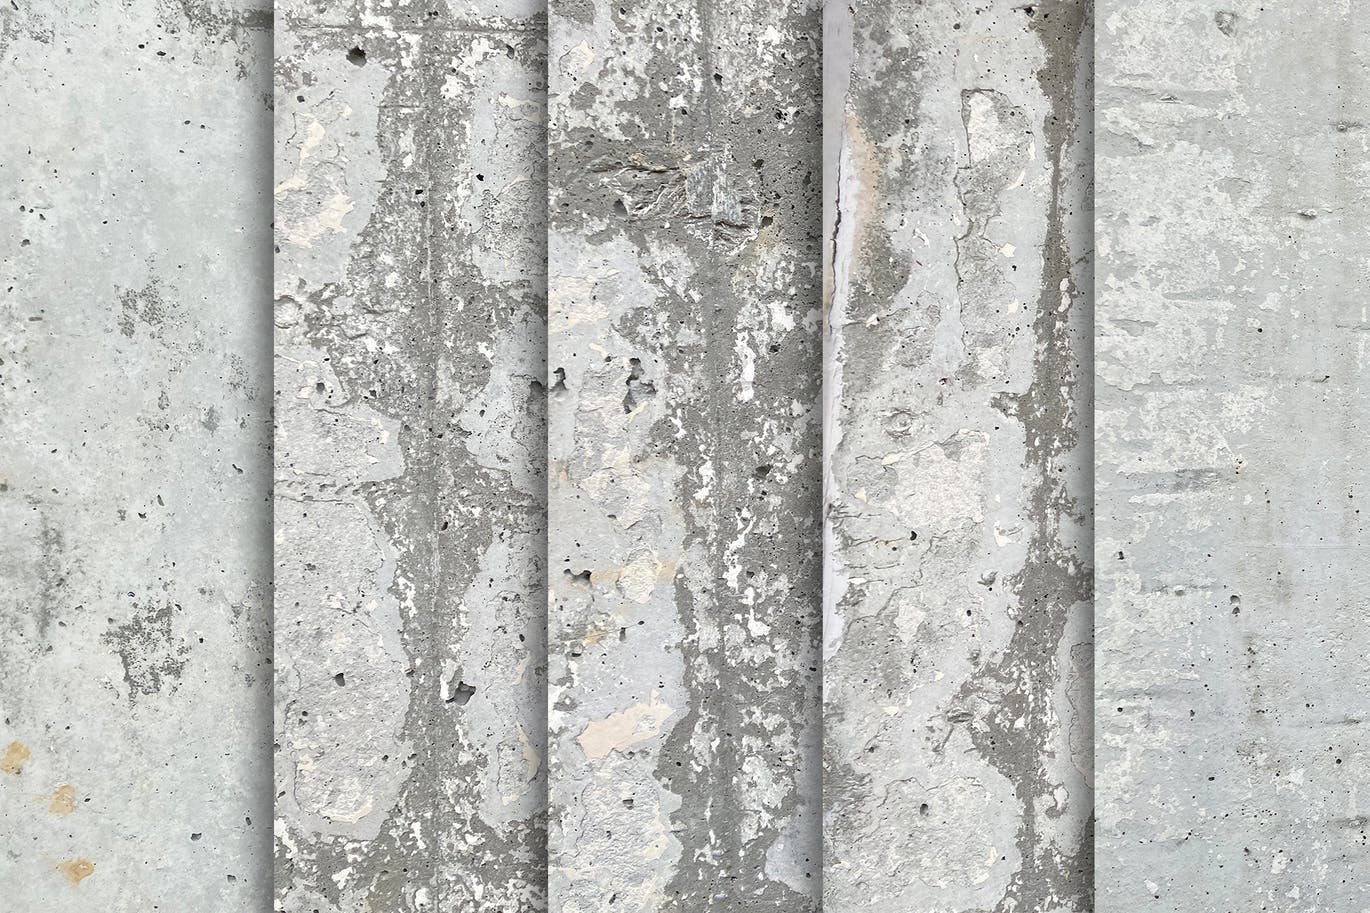 10个水泥墙纹理背景素材 Cement Wall Textures x10 图片素材 第3张